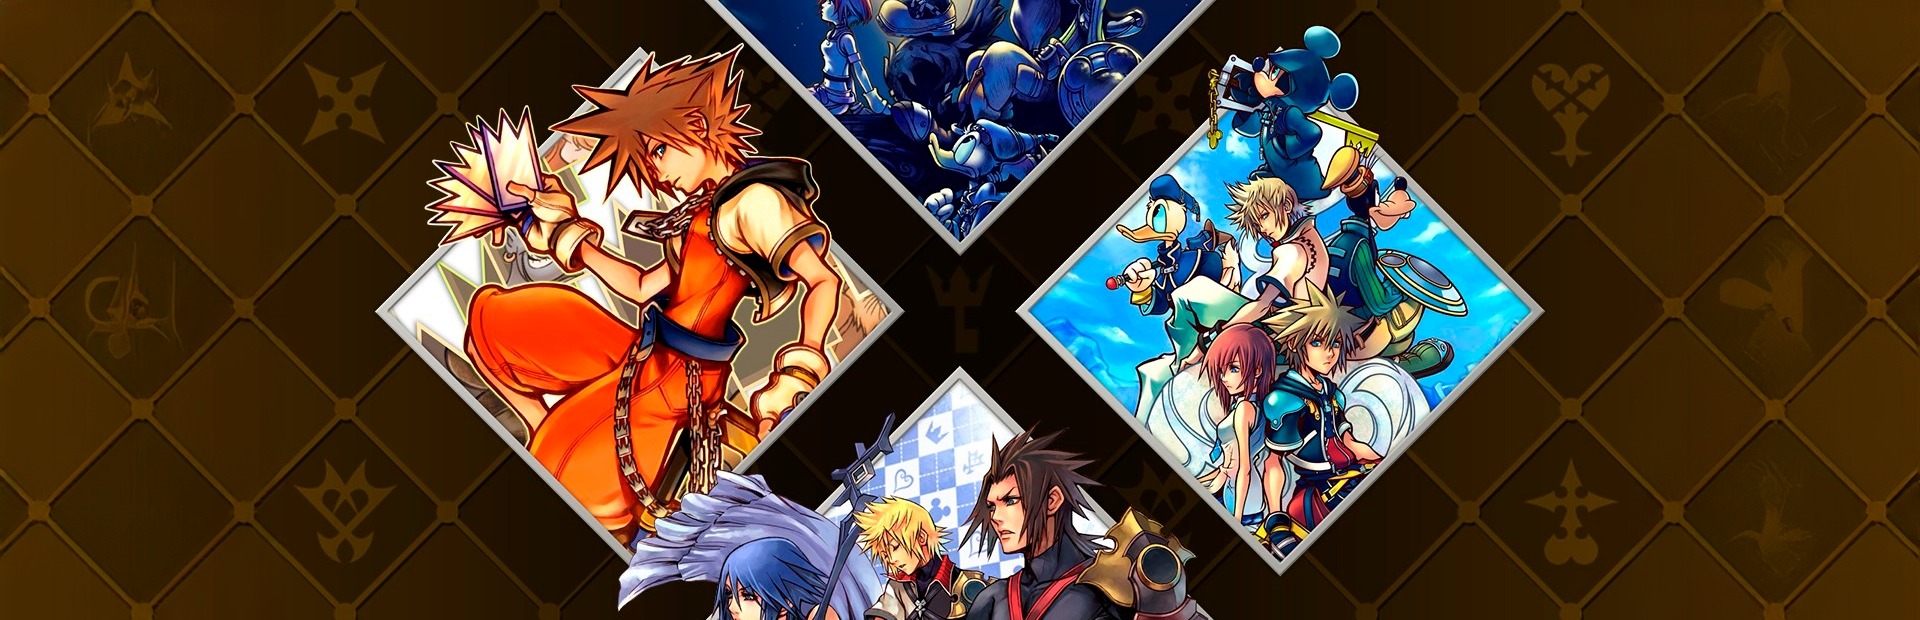 Kingdom Hearts HD 1.5+2.5 ReMIX